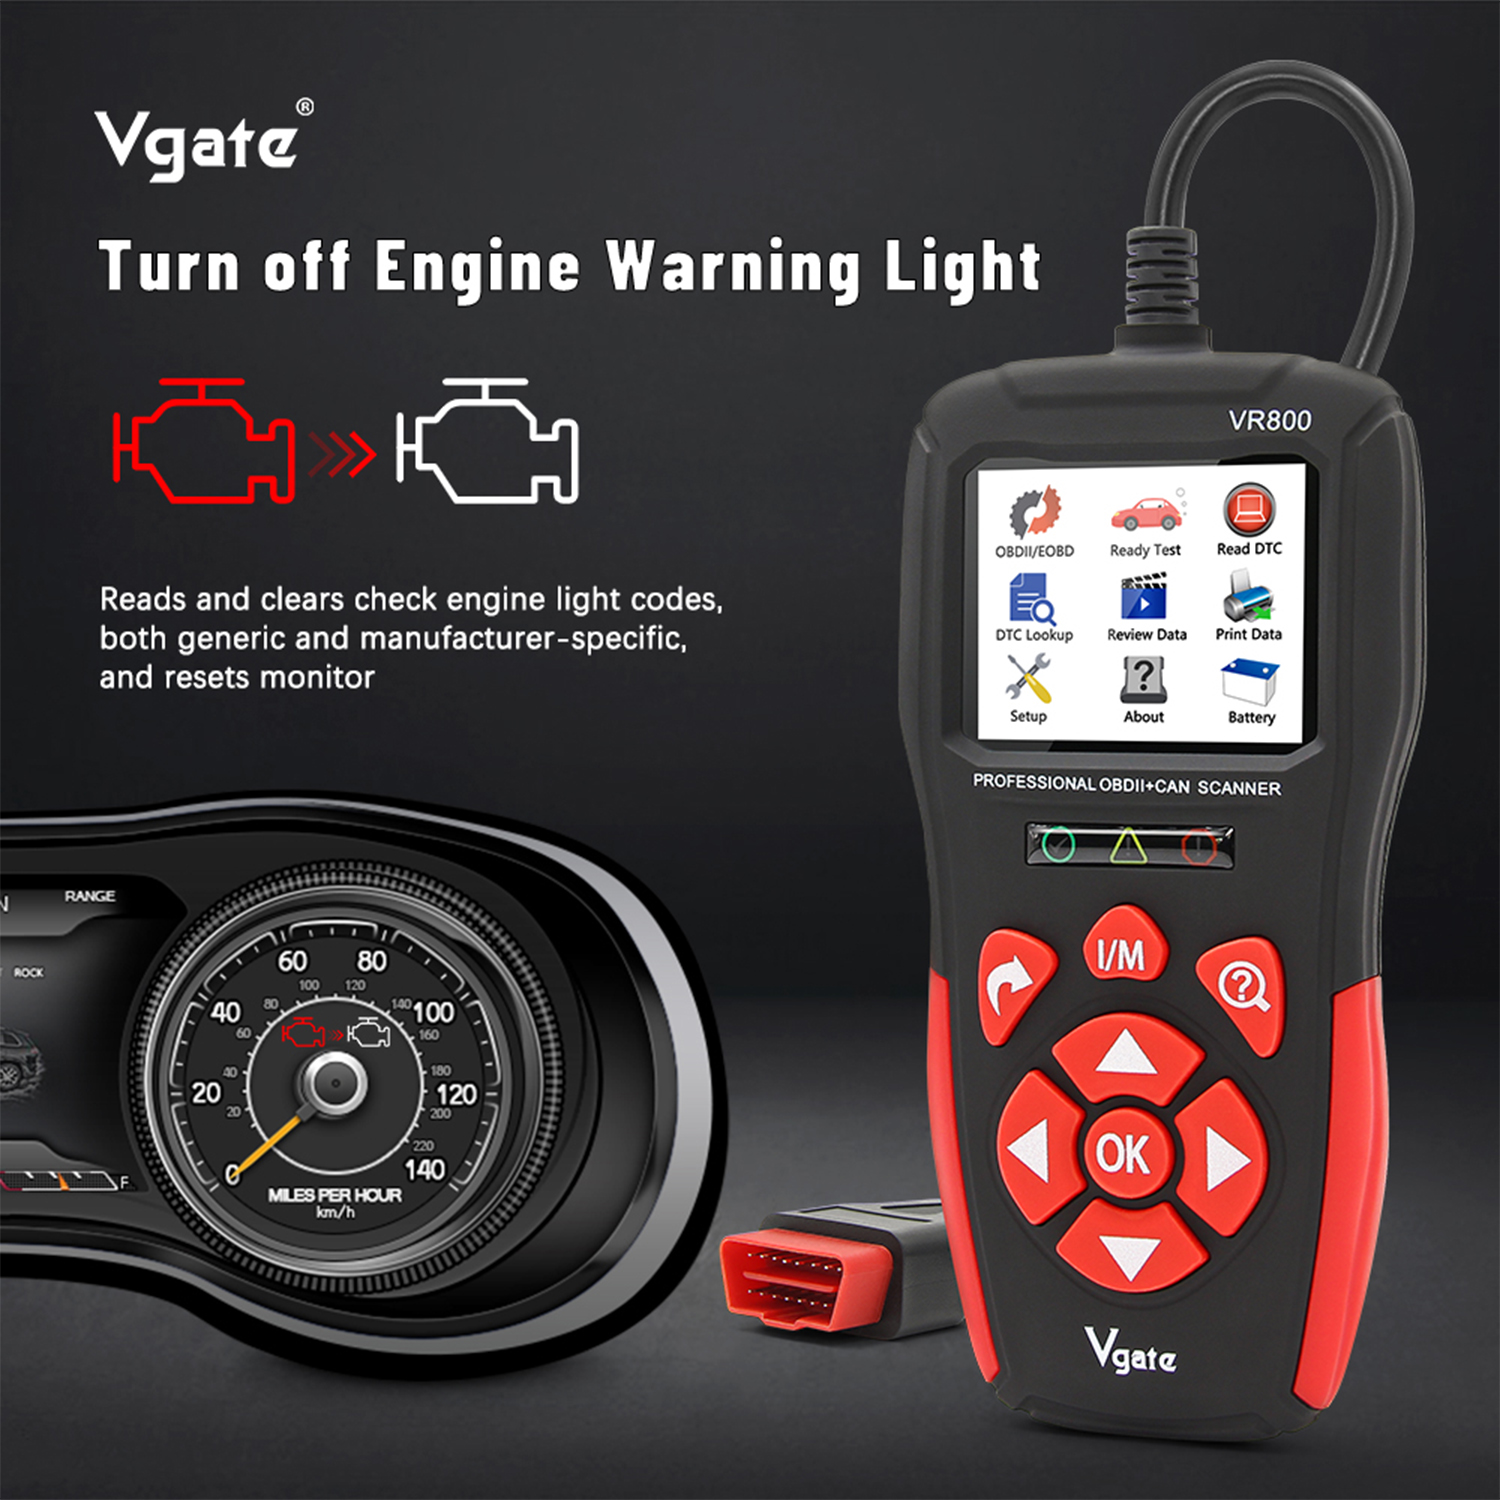 Vgate VR800